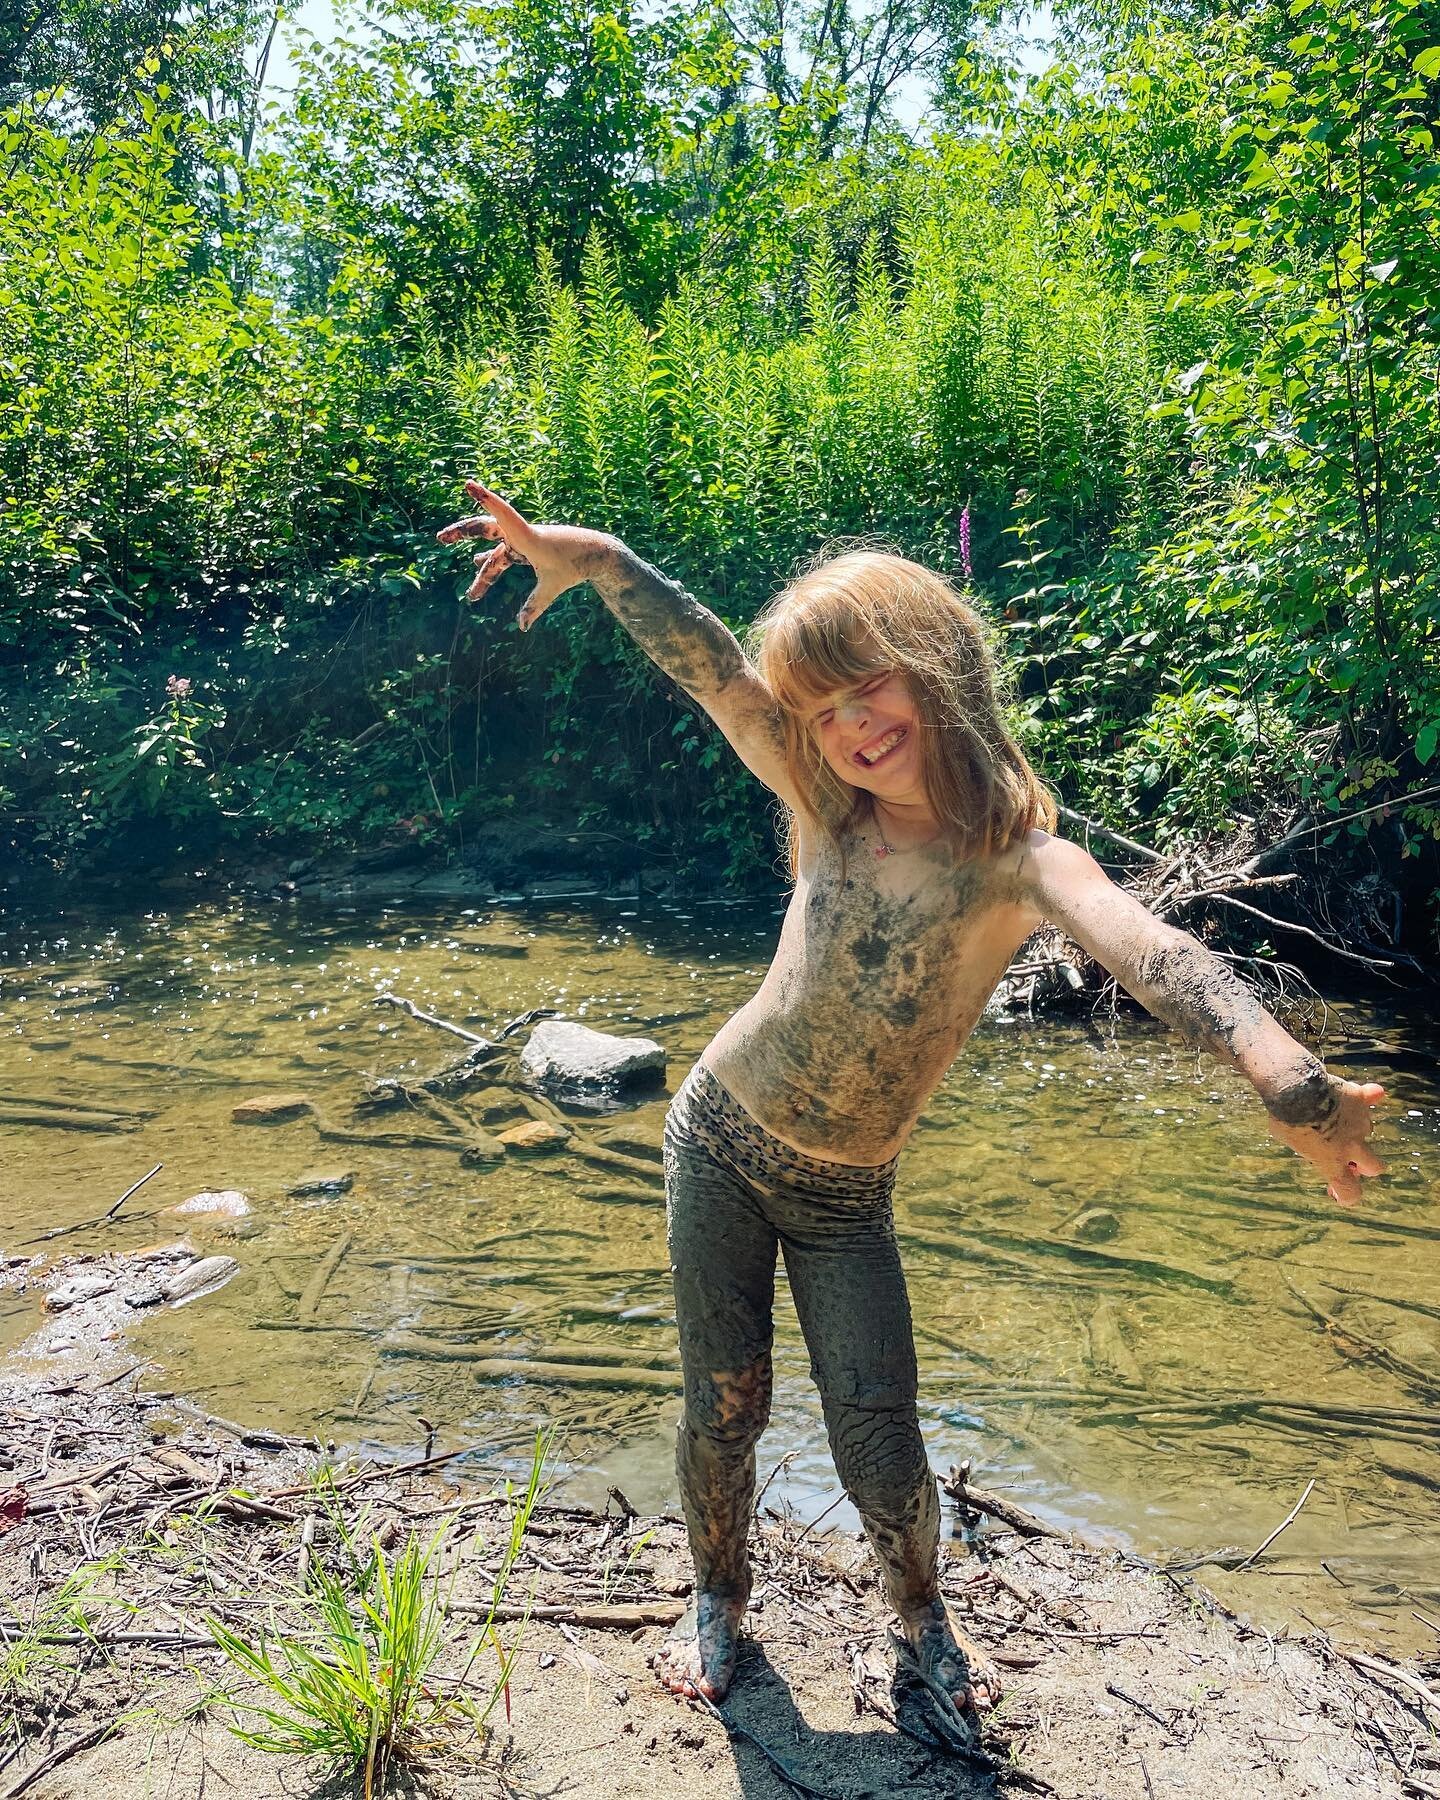 Childhood 💚
(Ce ne sont pas des pantalons, mais de la boue 🙊)
#freerangekids #enfantheureux